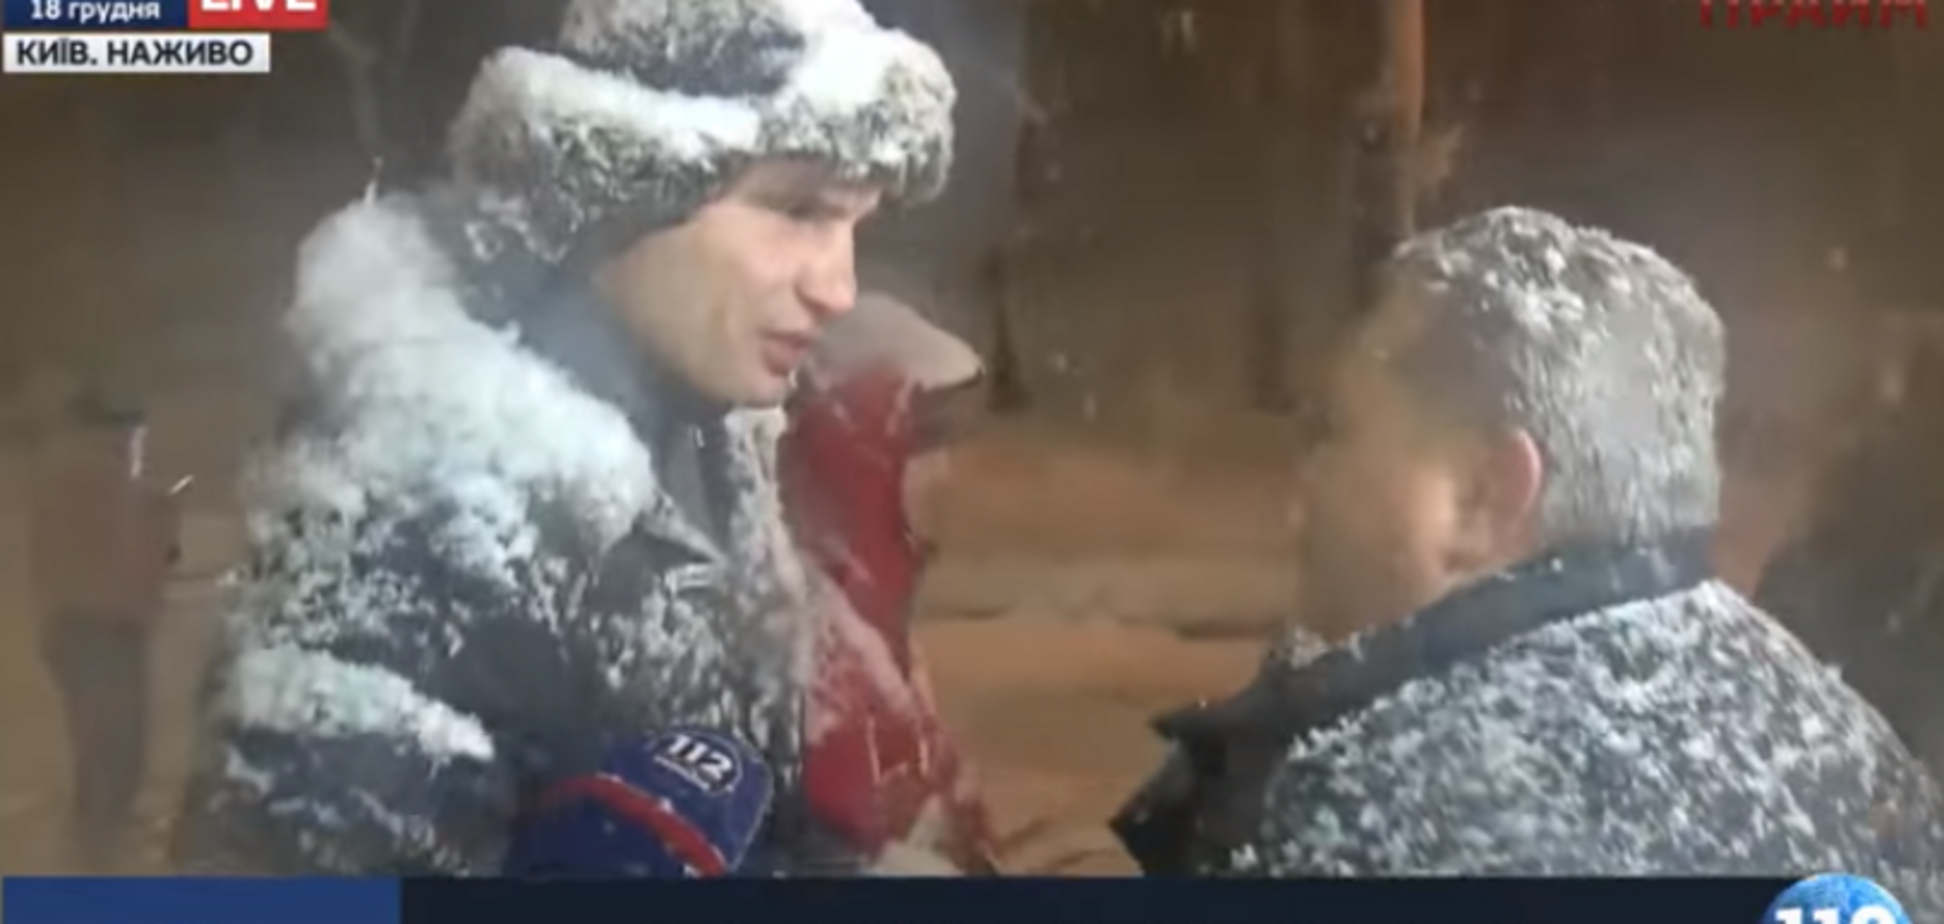 'Ты мне не рассказывай': Кличко в Киеве жестко отчитал водителя